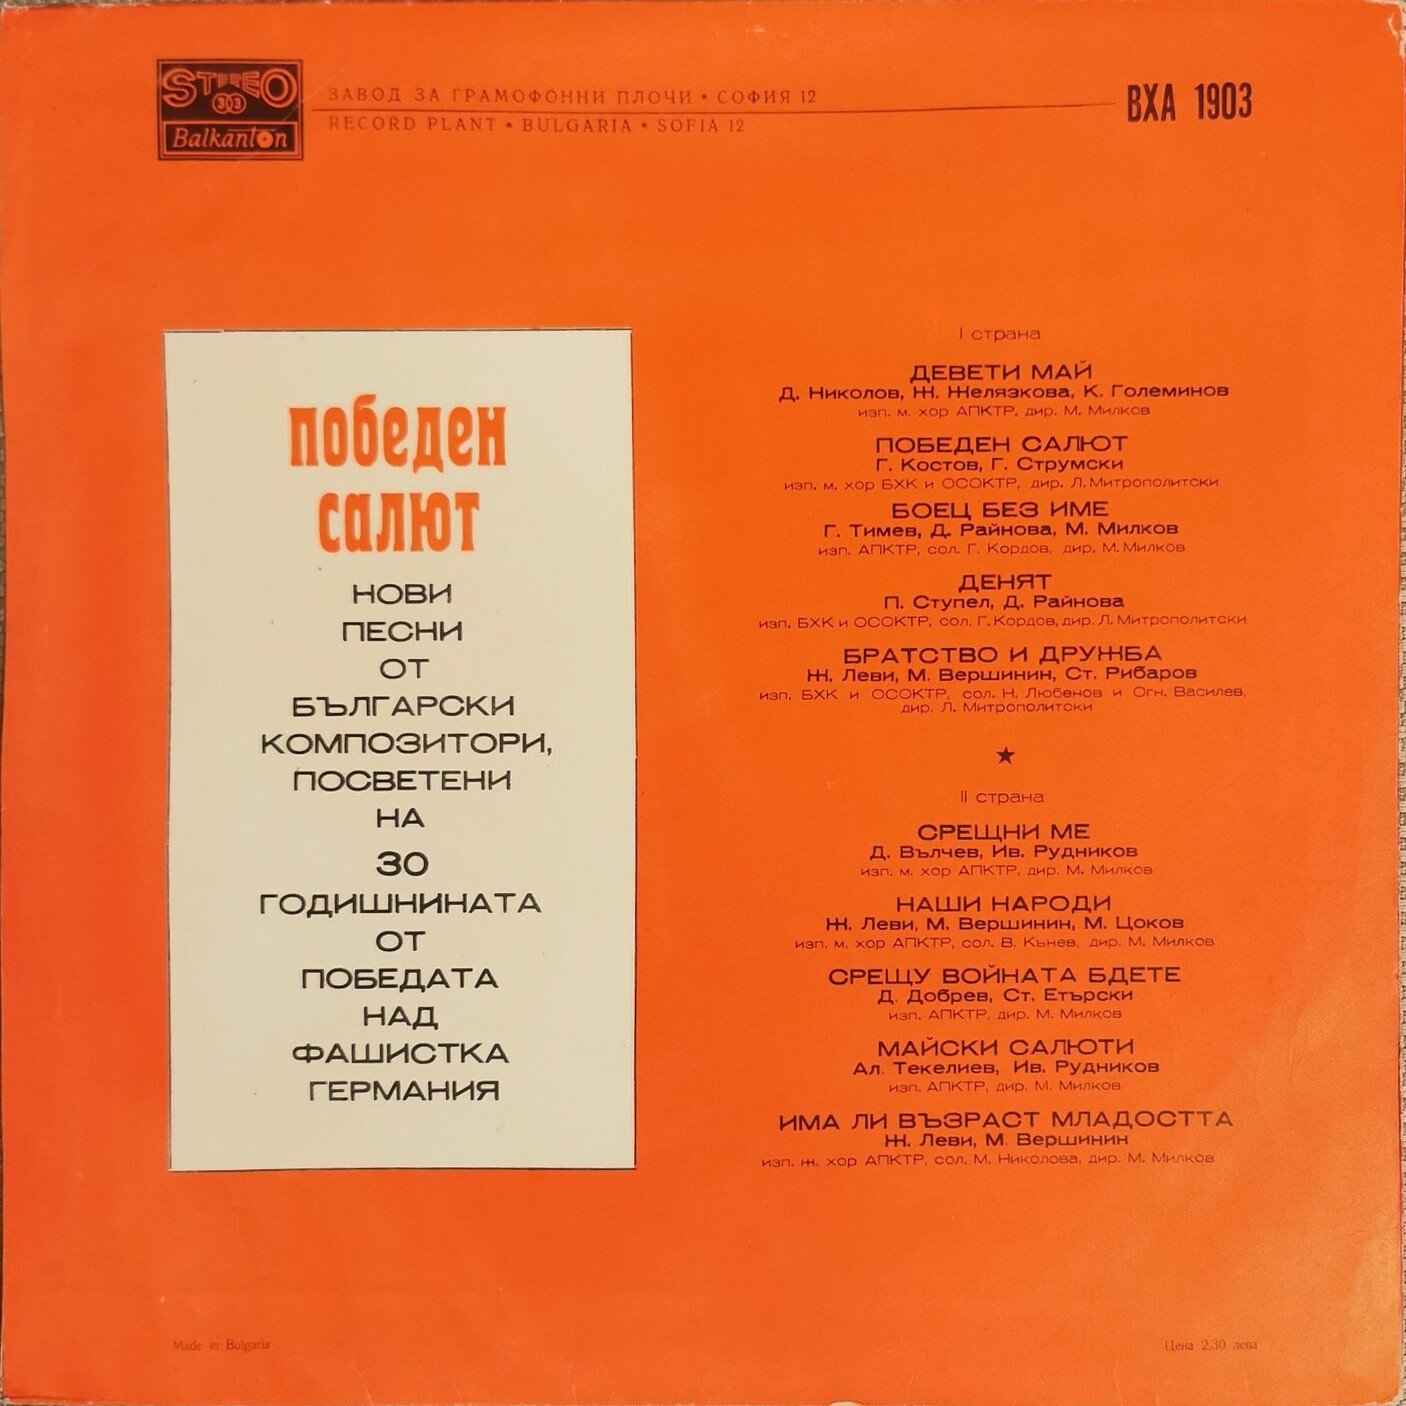 "Победен салют". Нови песни от български композитори, посветени на 30 годишнината от победата над фашистка Германия